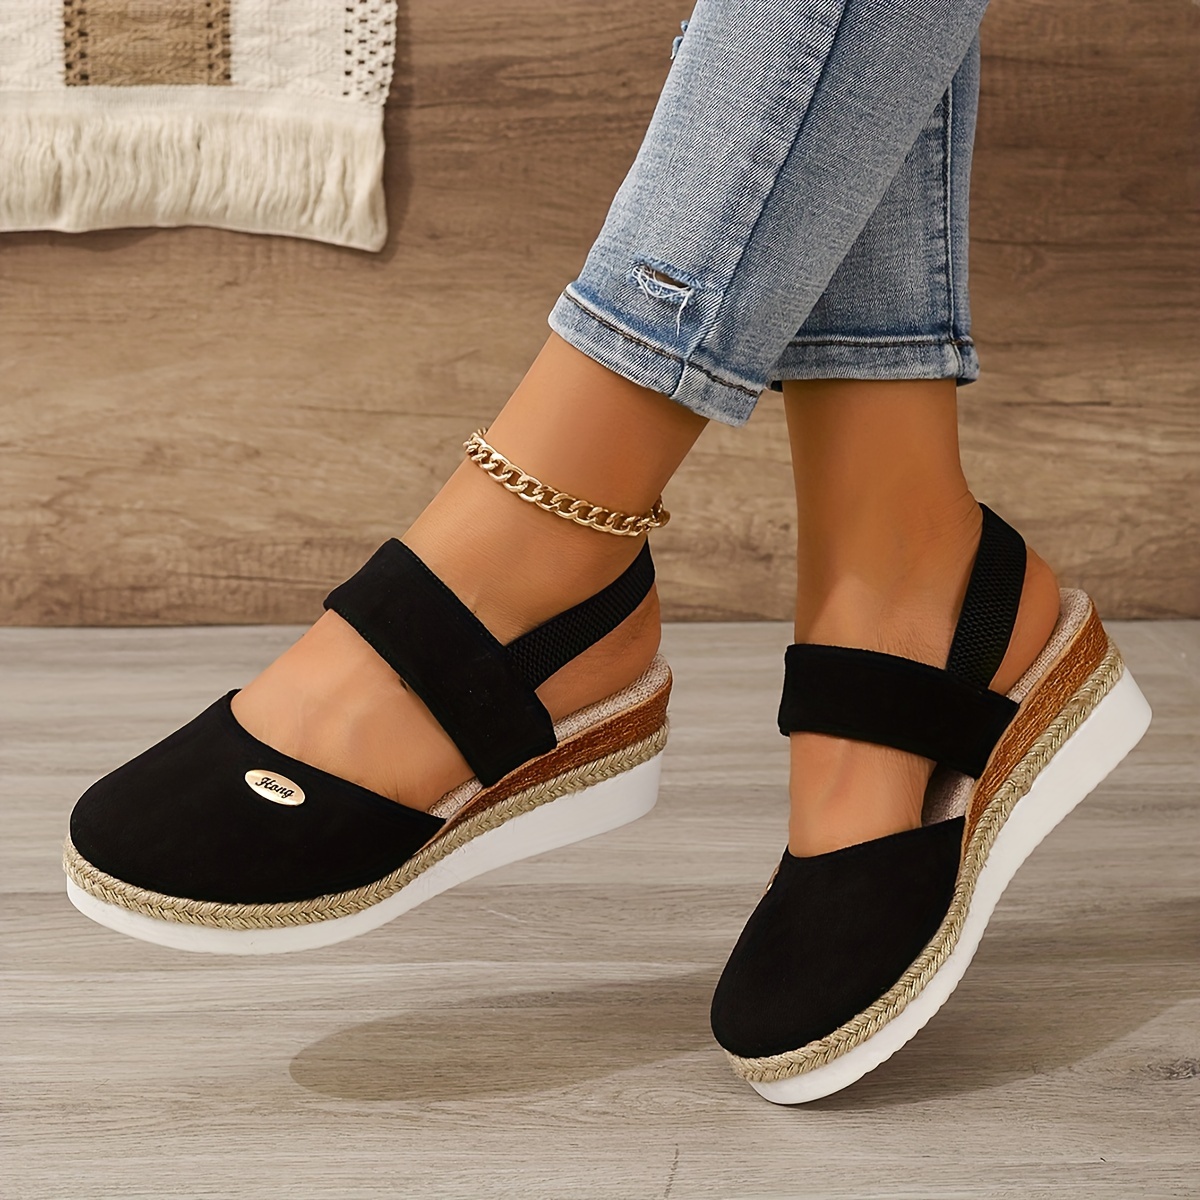 

Women's Solid Color Platform Sandals, Ankle Elastic Strap Closed Toe Shoes, Versatile Non-slip Wedge Shoes